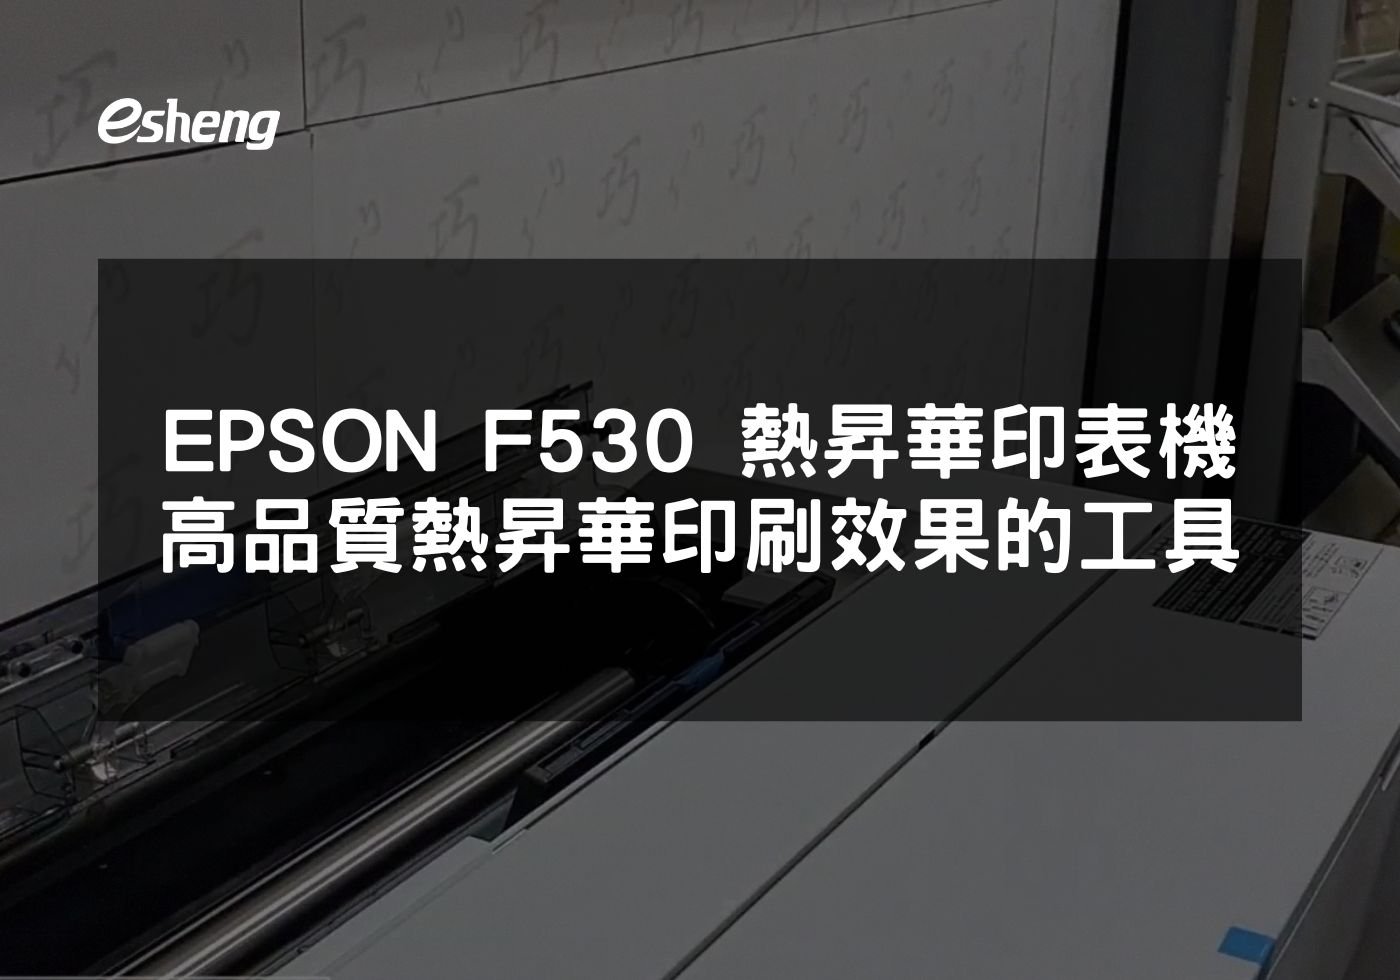 閱讀更多文章 EPSON F530 熱昇華印表機 打造高品質熱昇華印刷效果的專業工具